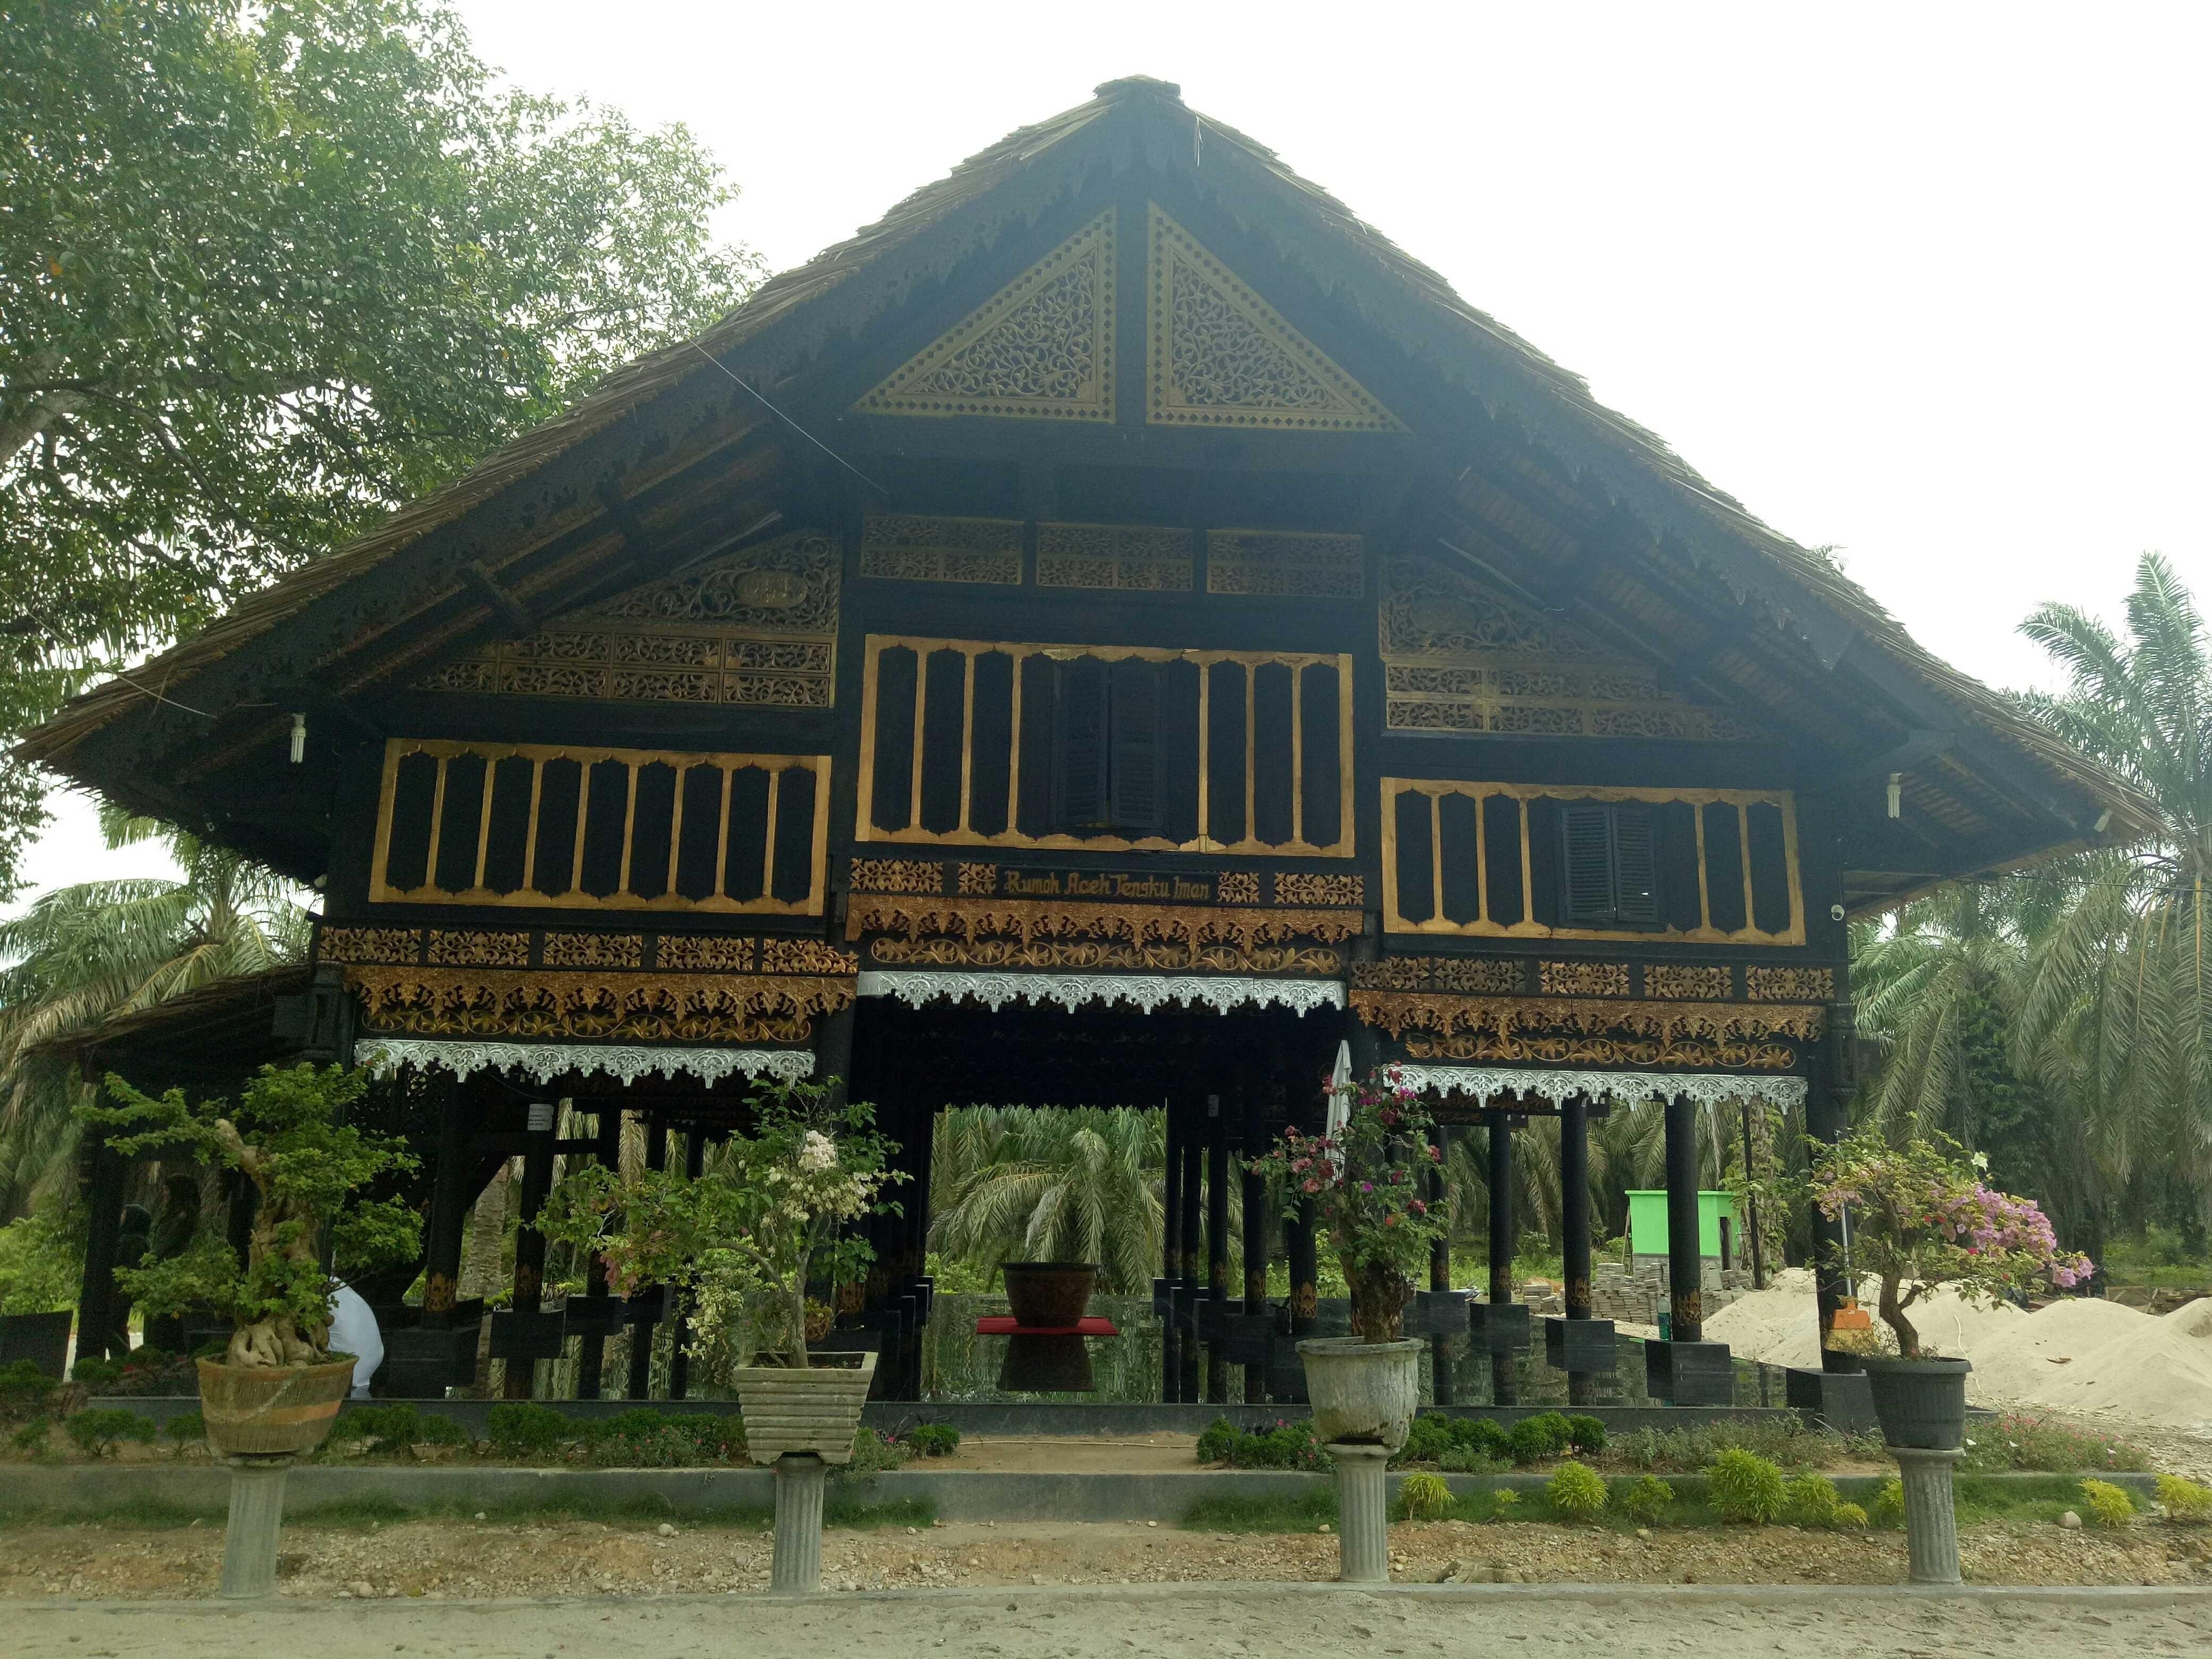 Rumah Adat Aceh Steemkr